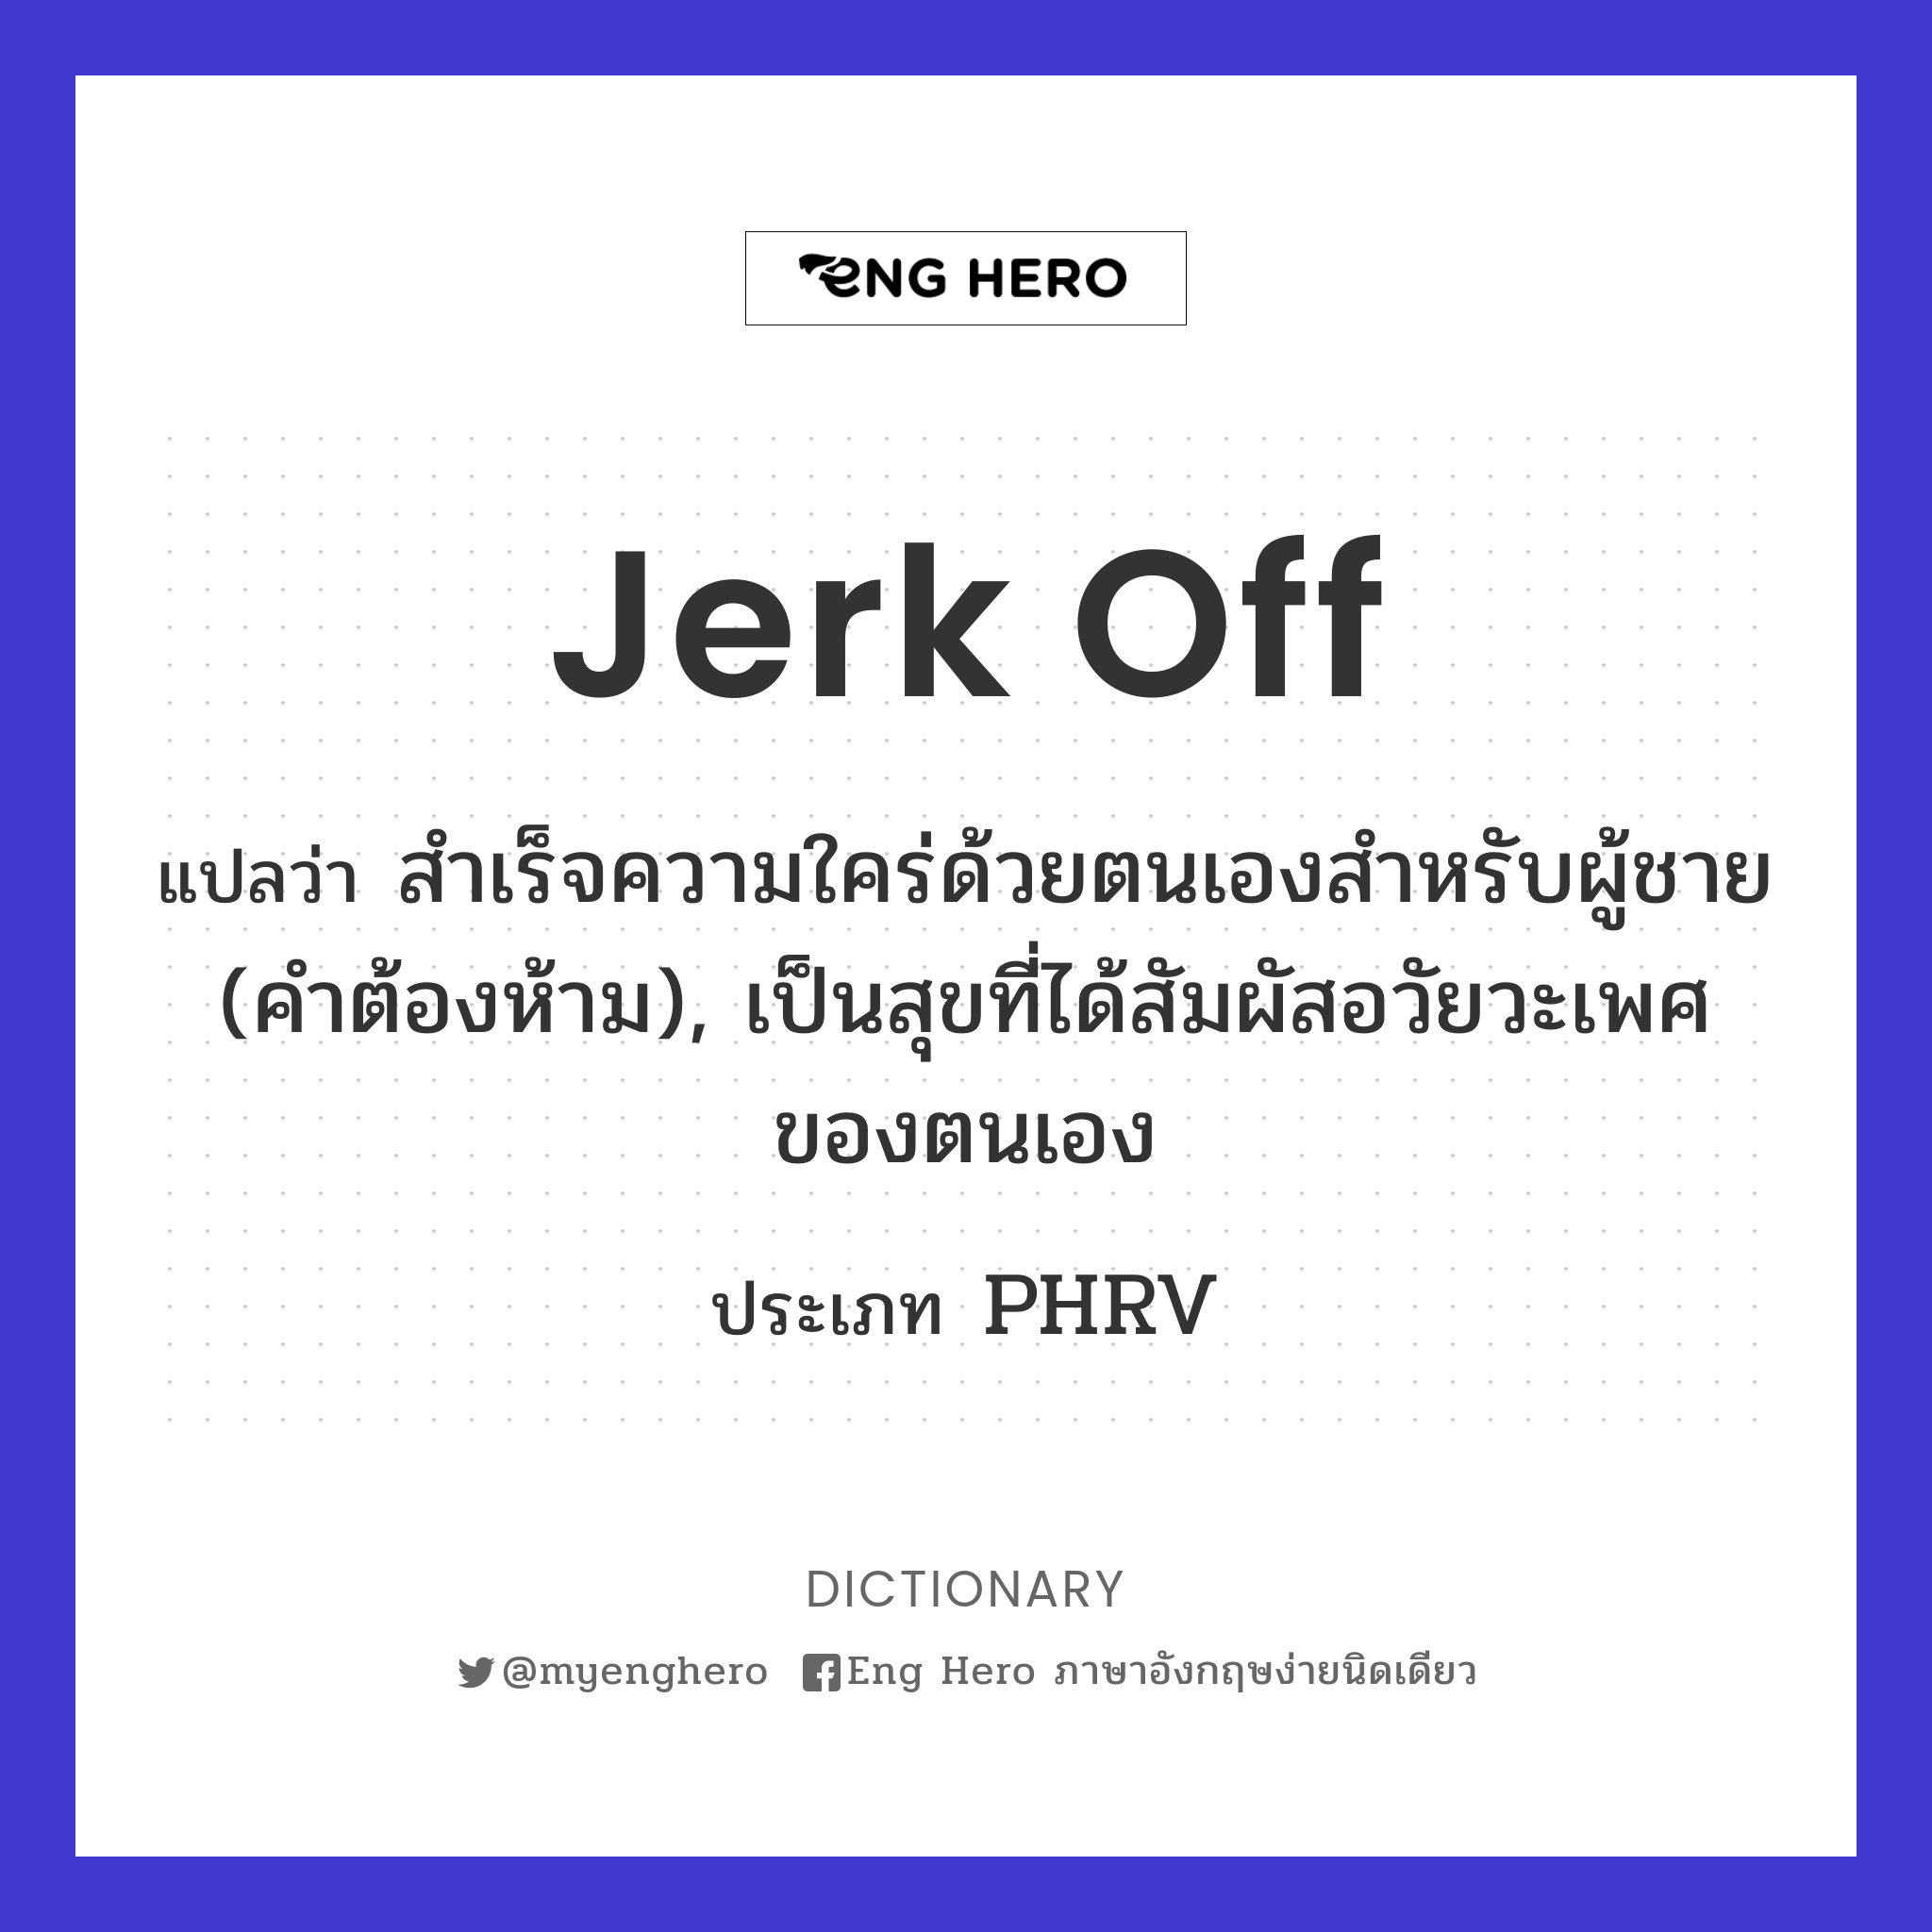 Jerk Off แปลว่า สำเร็จความใคร่ด้วยตนเองสำหรับผู้ชาย (คำต้องห้าม),  เป็นสุขที่ได้สัมผัสอวัยวะเพศของตนเอง | Eng Hero เรียนภาษาอังกฤษ ออนไลน์ ฟรี